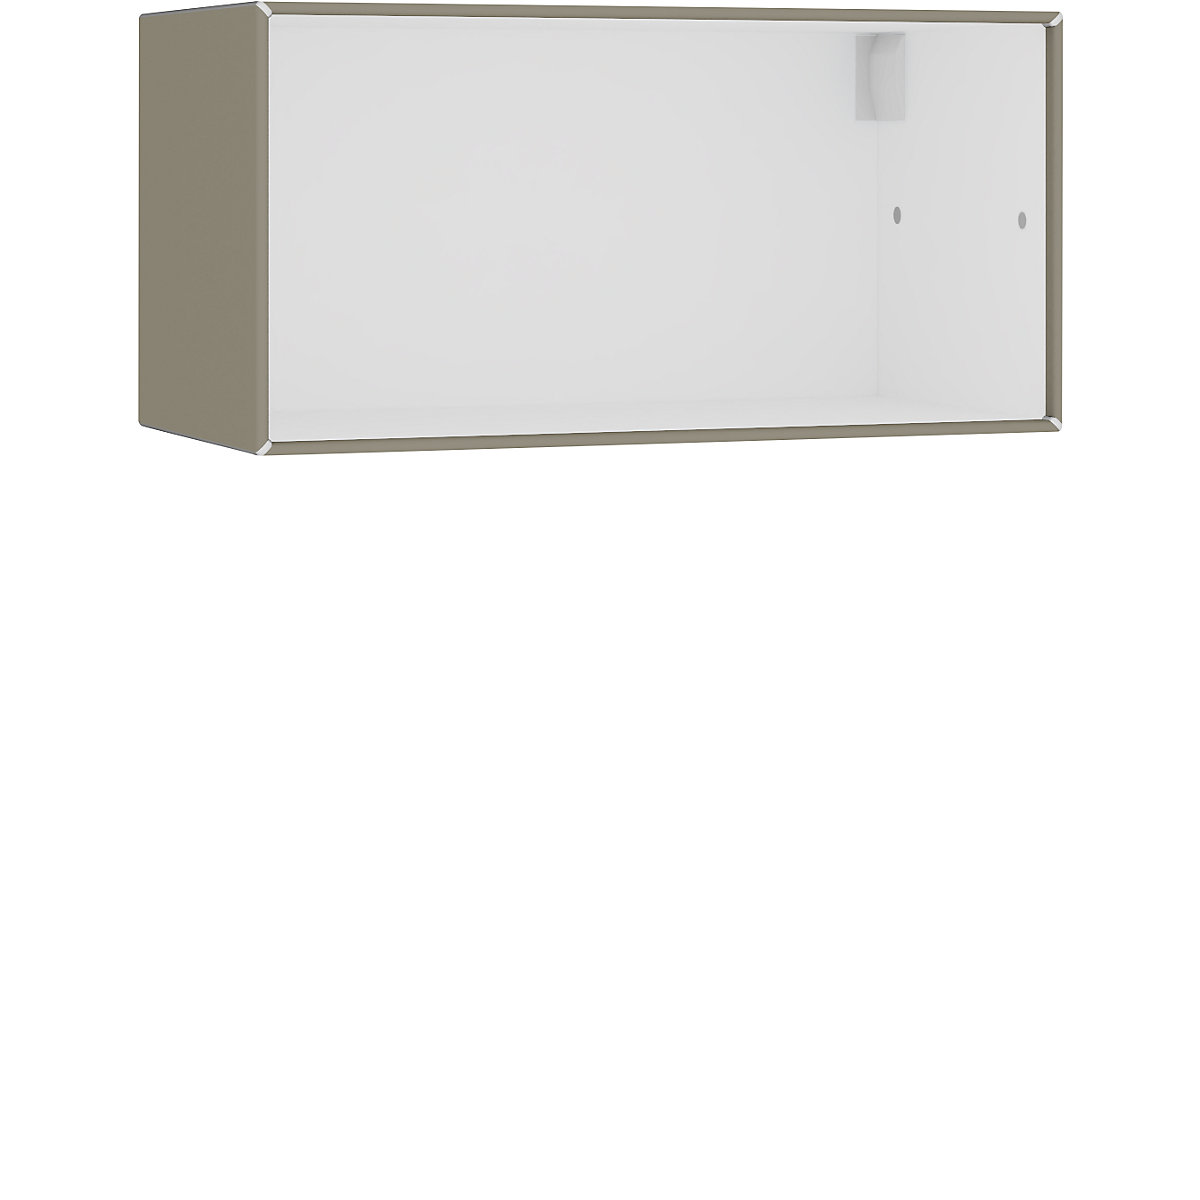 Compartimento individual abierto, para colgar – mauser, anchura 770 mm, gris beige / blanco puro-6